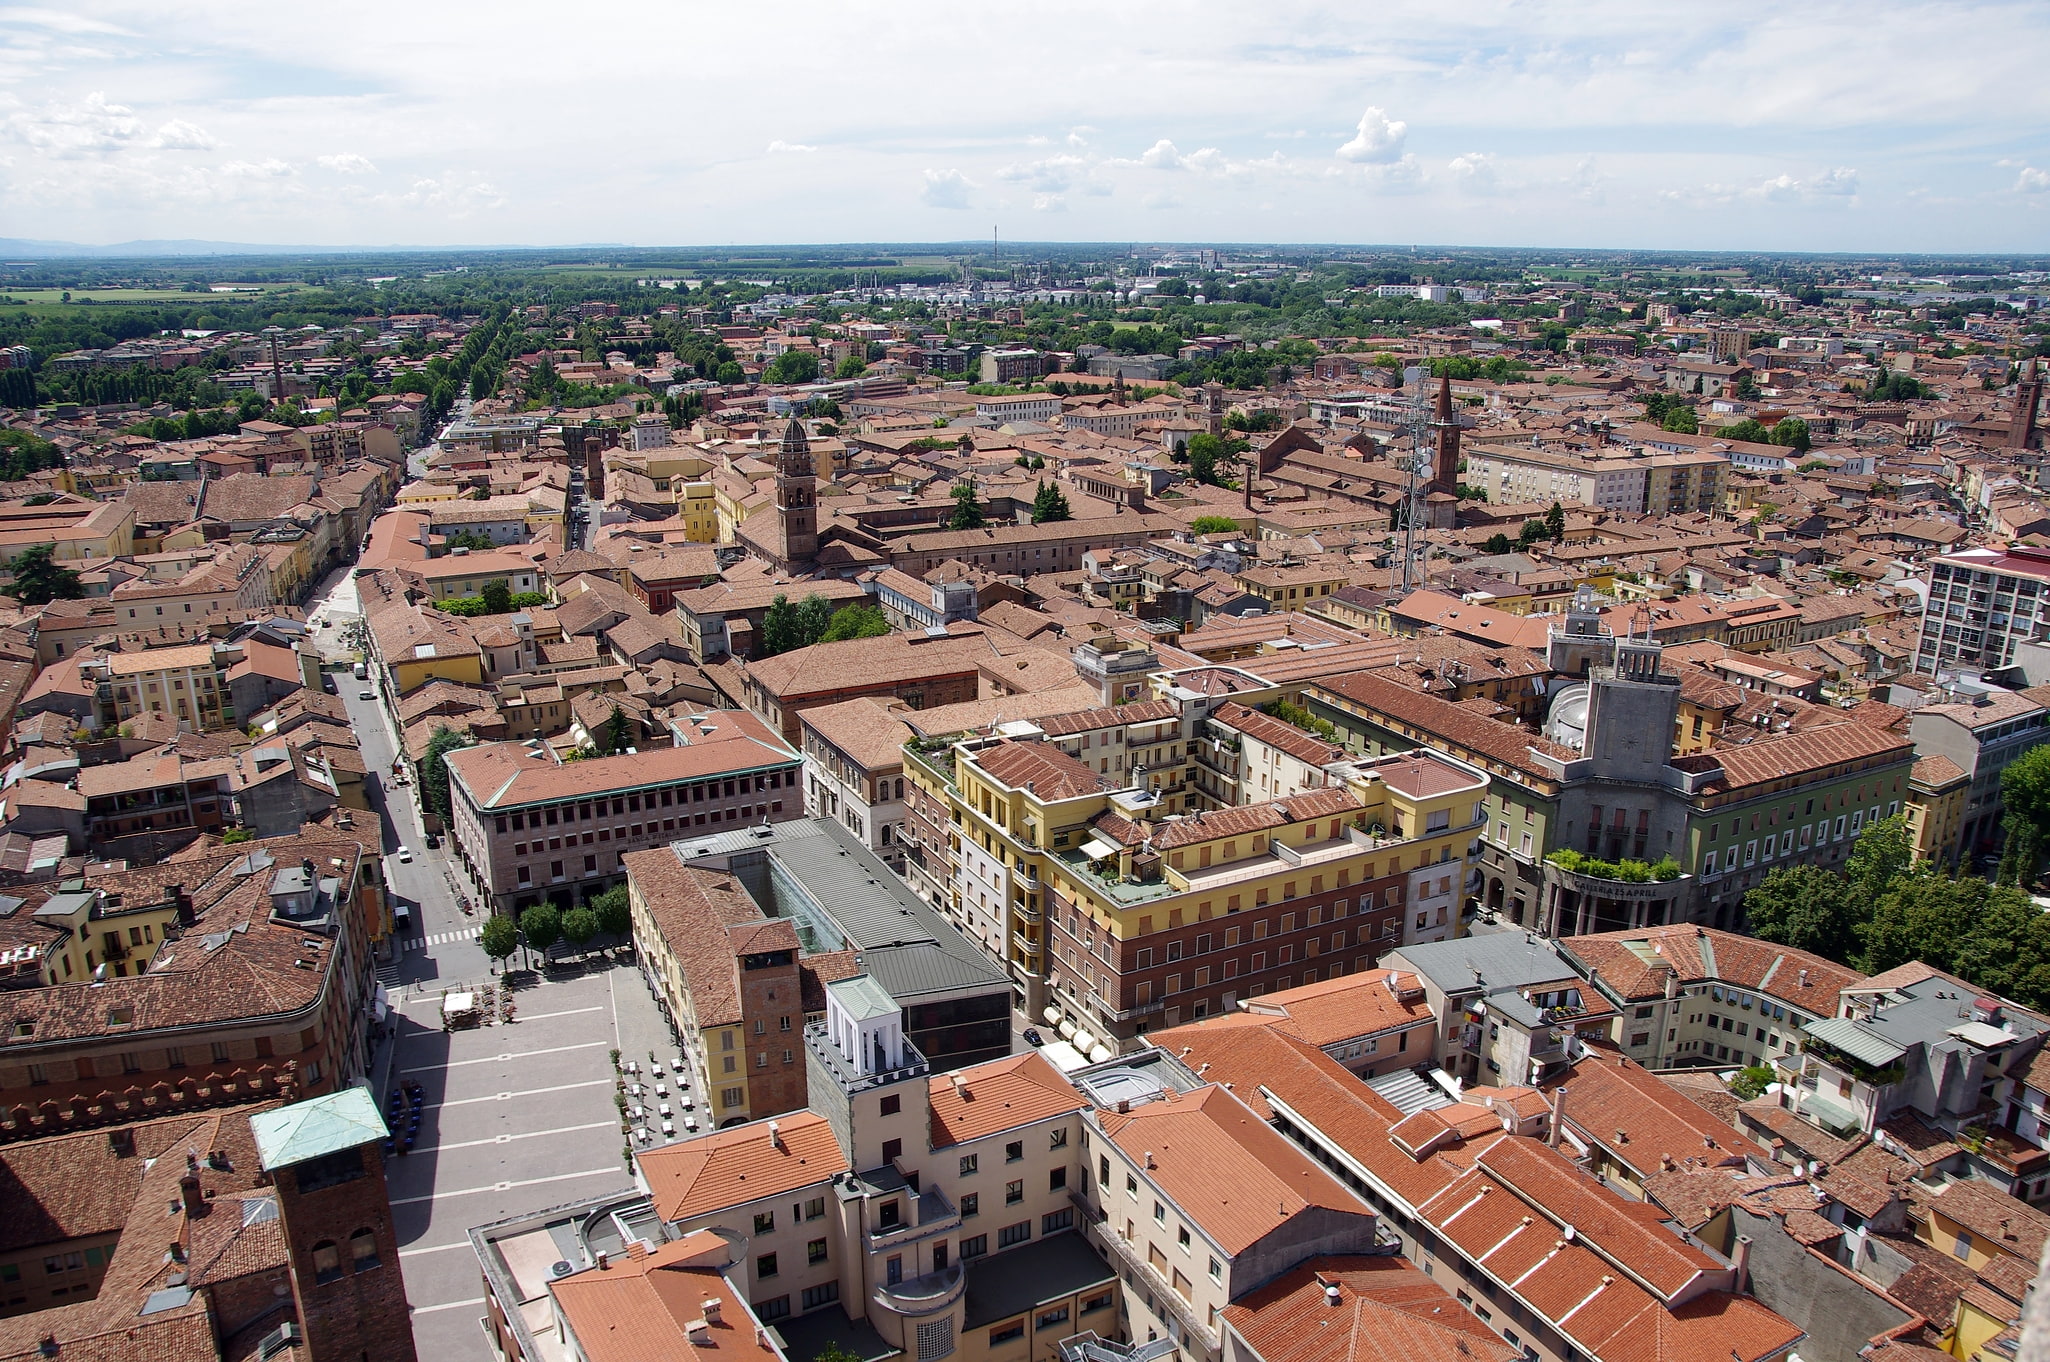 Cremona, Italy